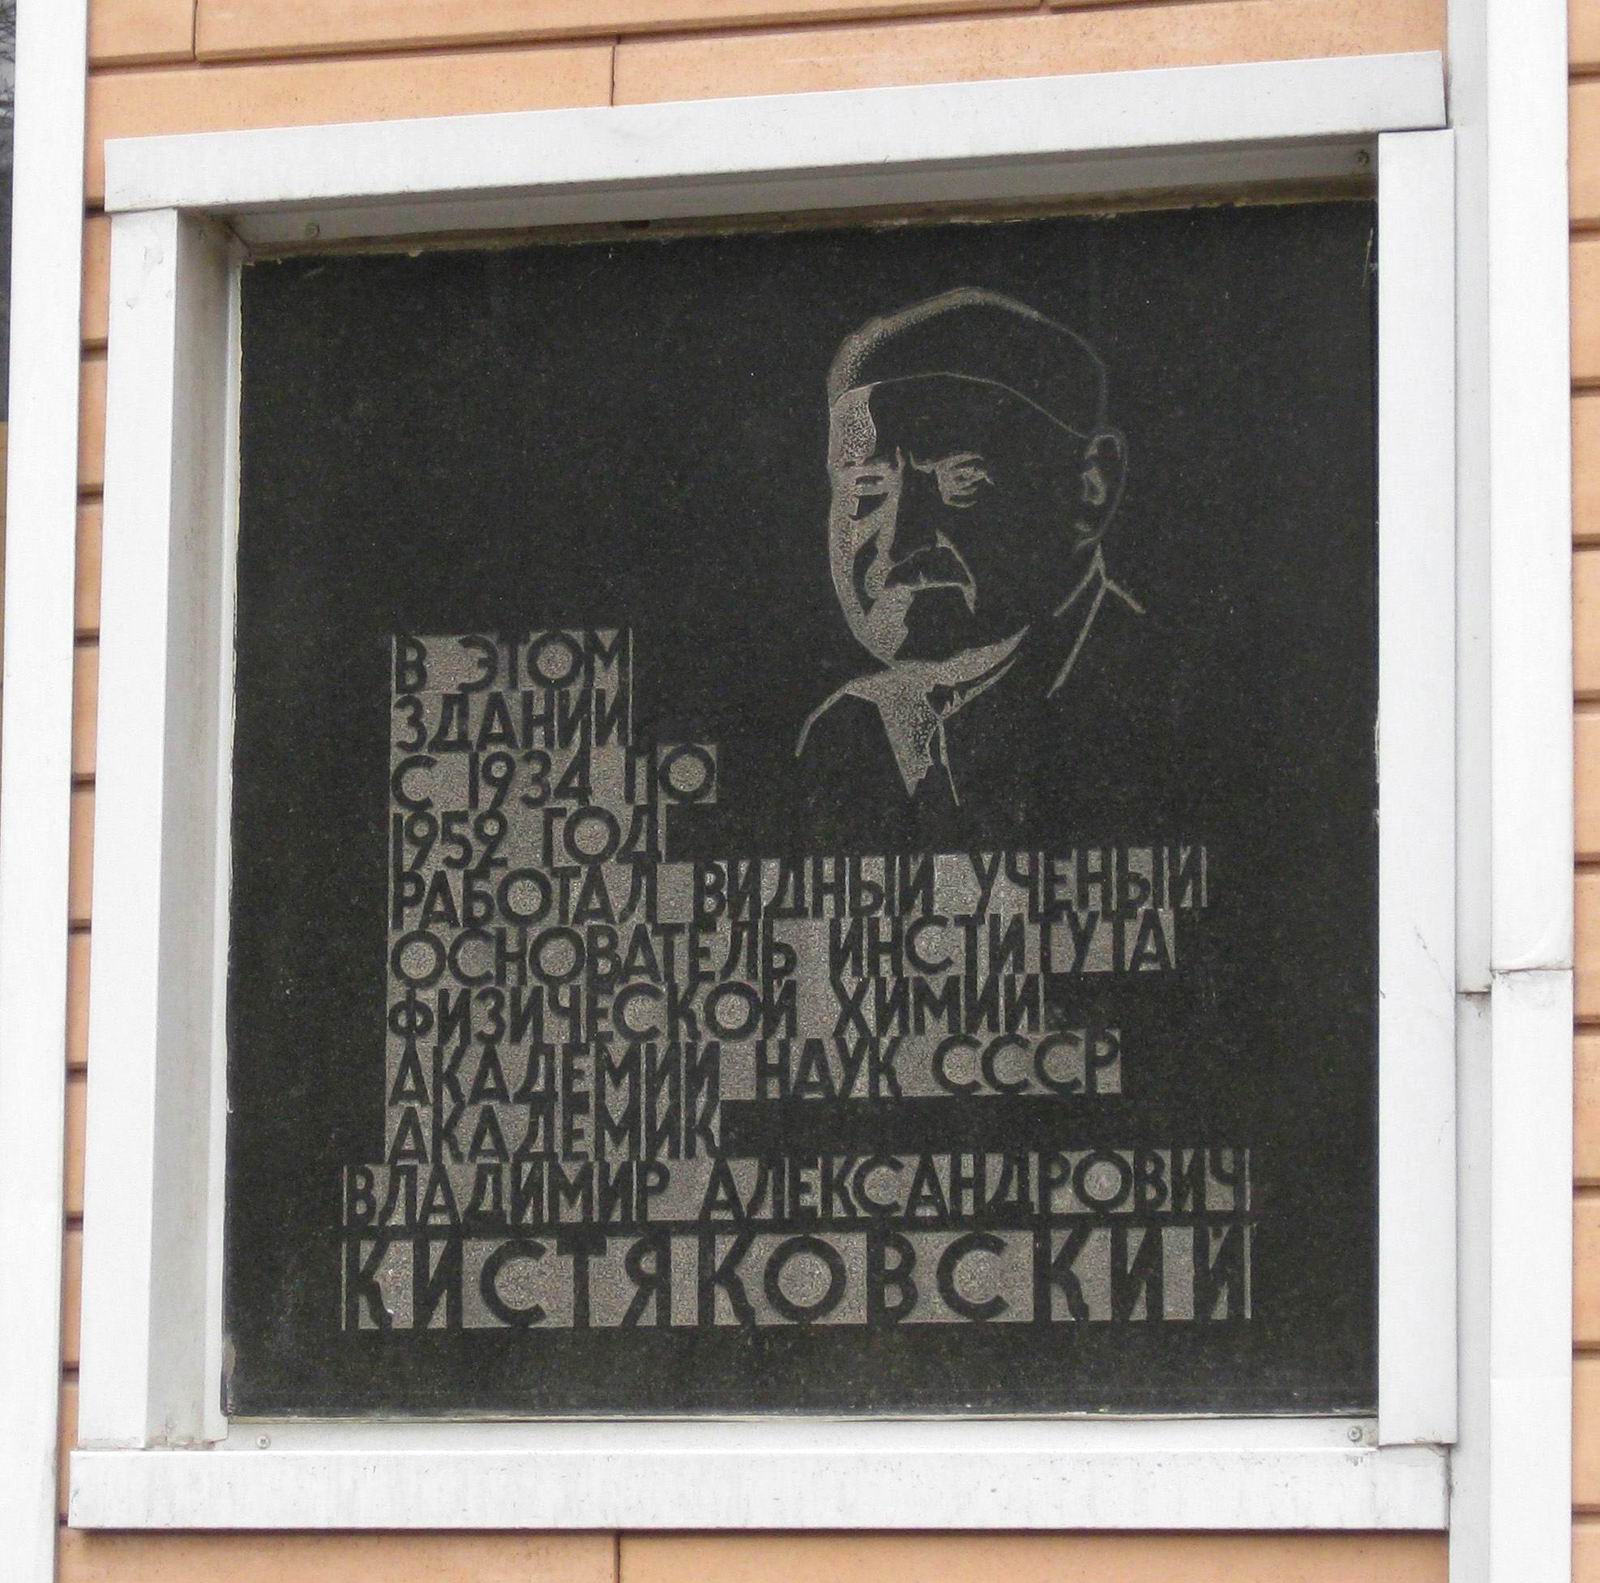 Мемориальная доска Кистяковскому В.А. (1865-1952), арх. Р.А.Бегунц, на Ленинском проспекте, дом 31, строение 4, открыта 6.12.1967.